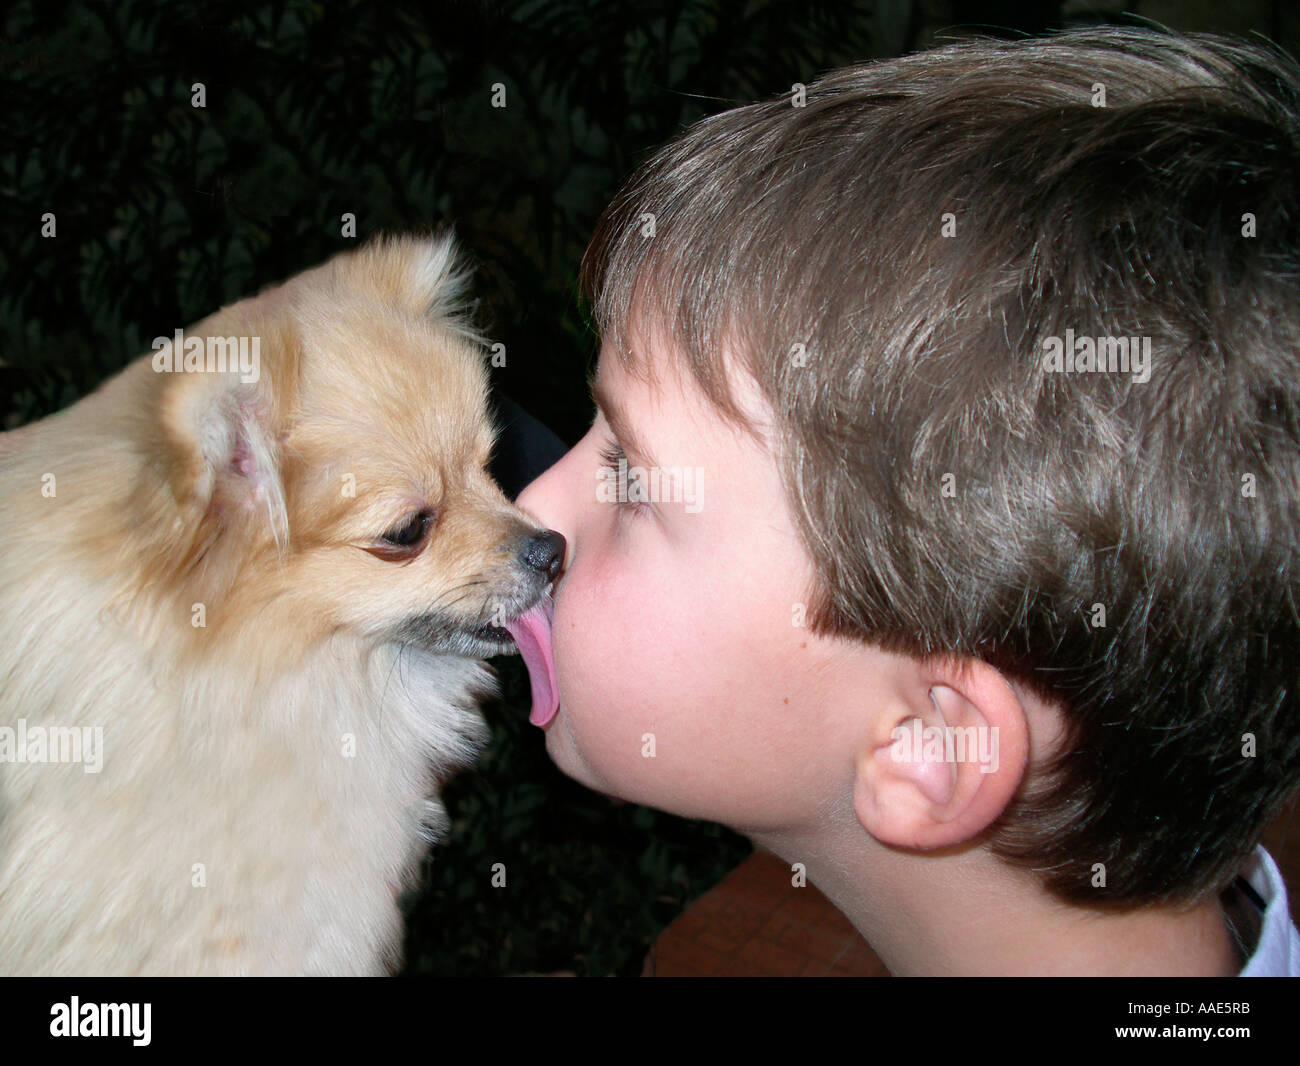 Dog licking boy Stock Photo